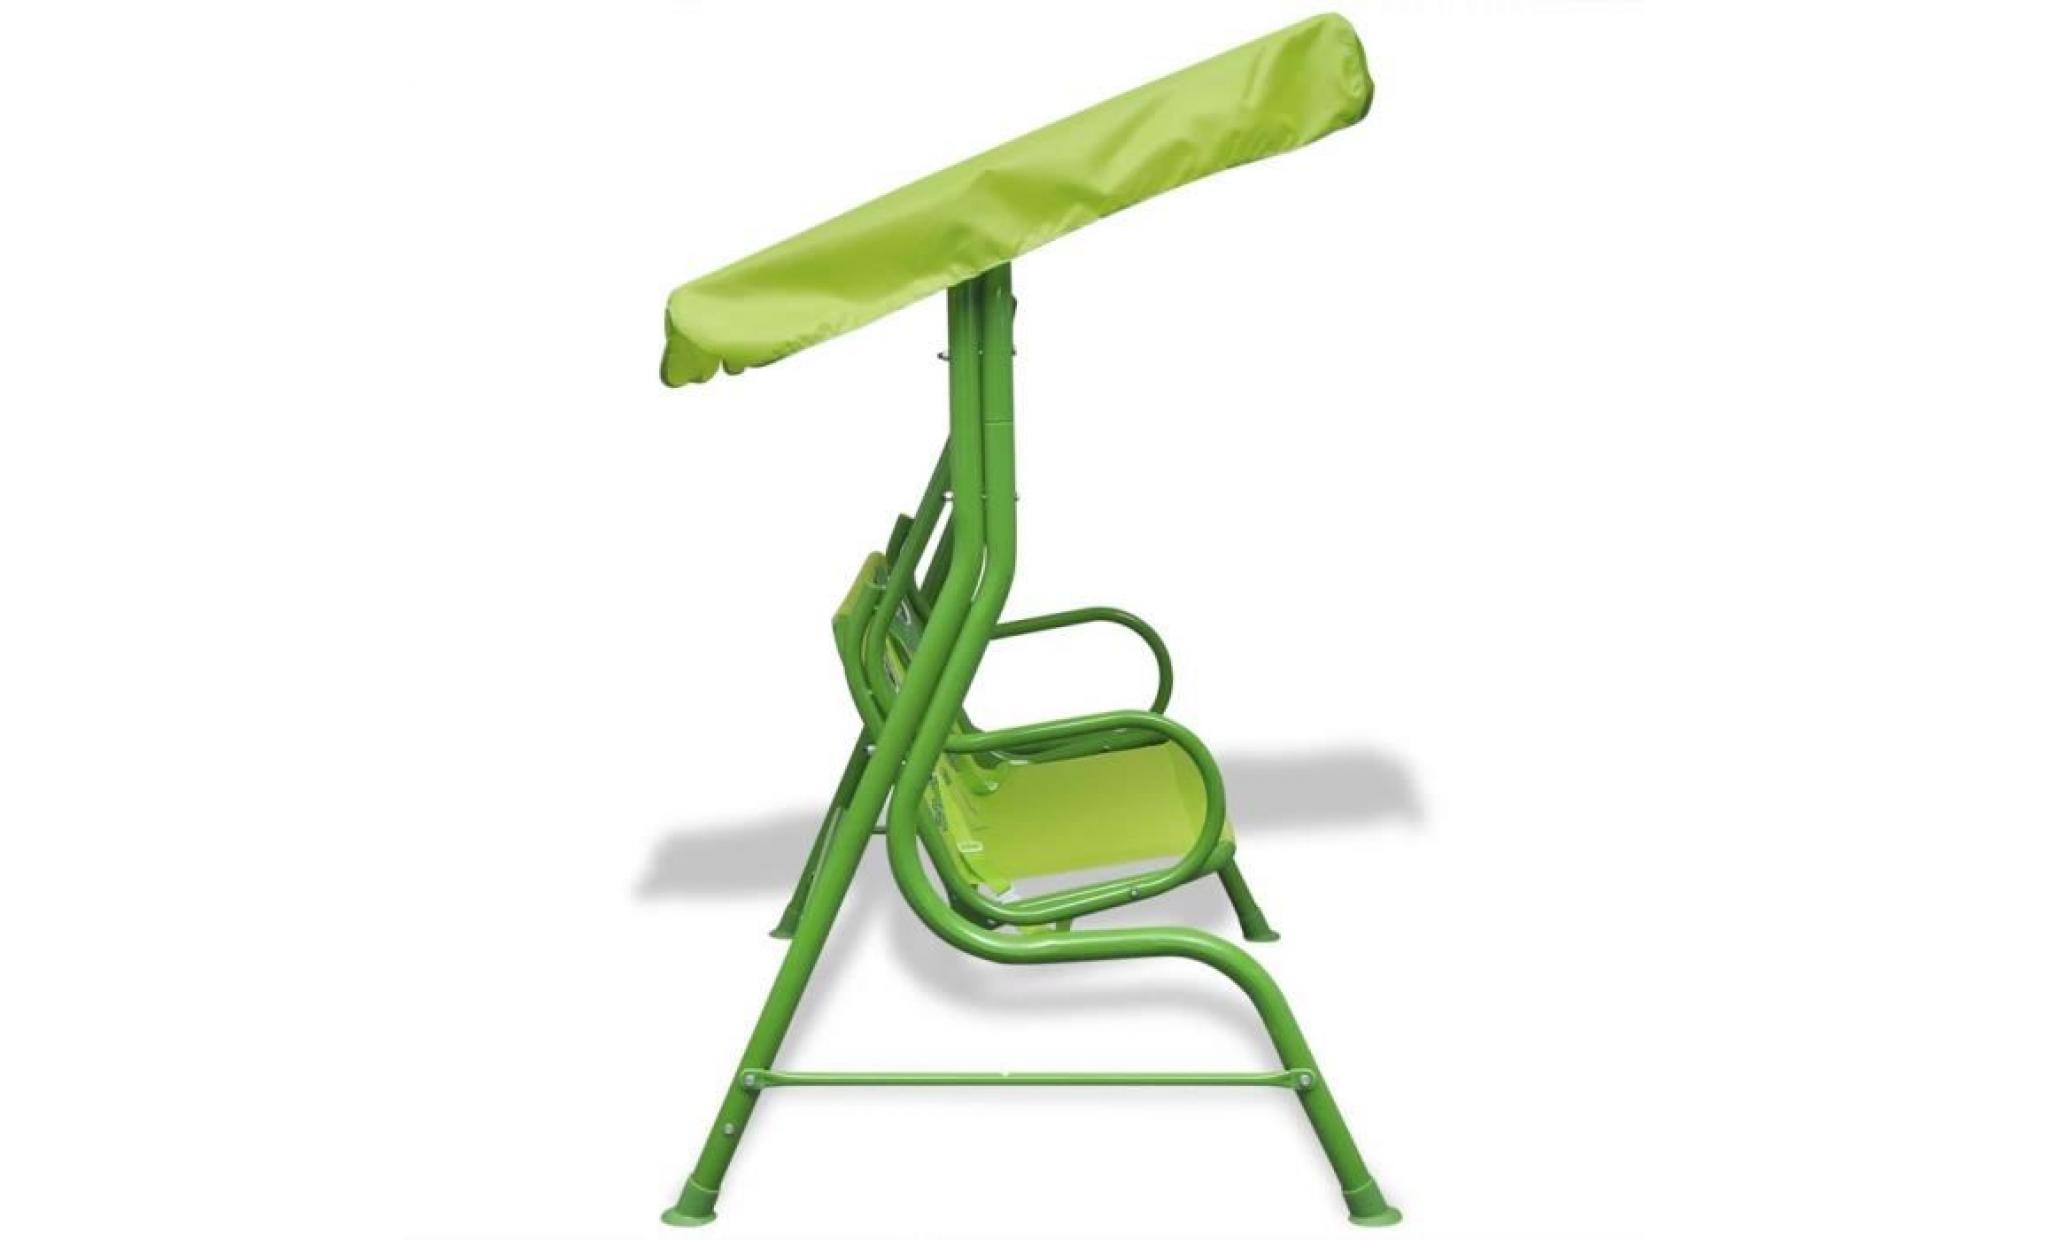 siège balançoire pour enfants vert vert pas cher